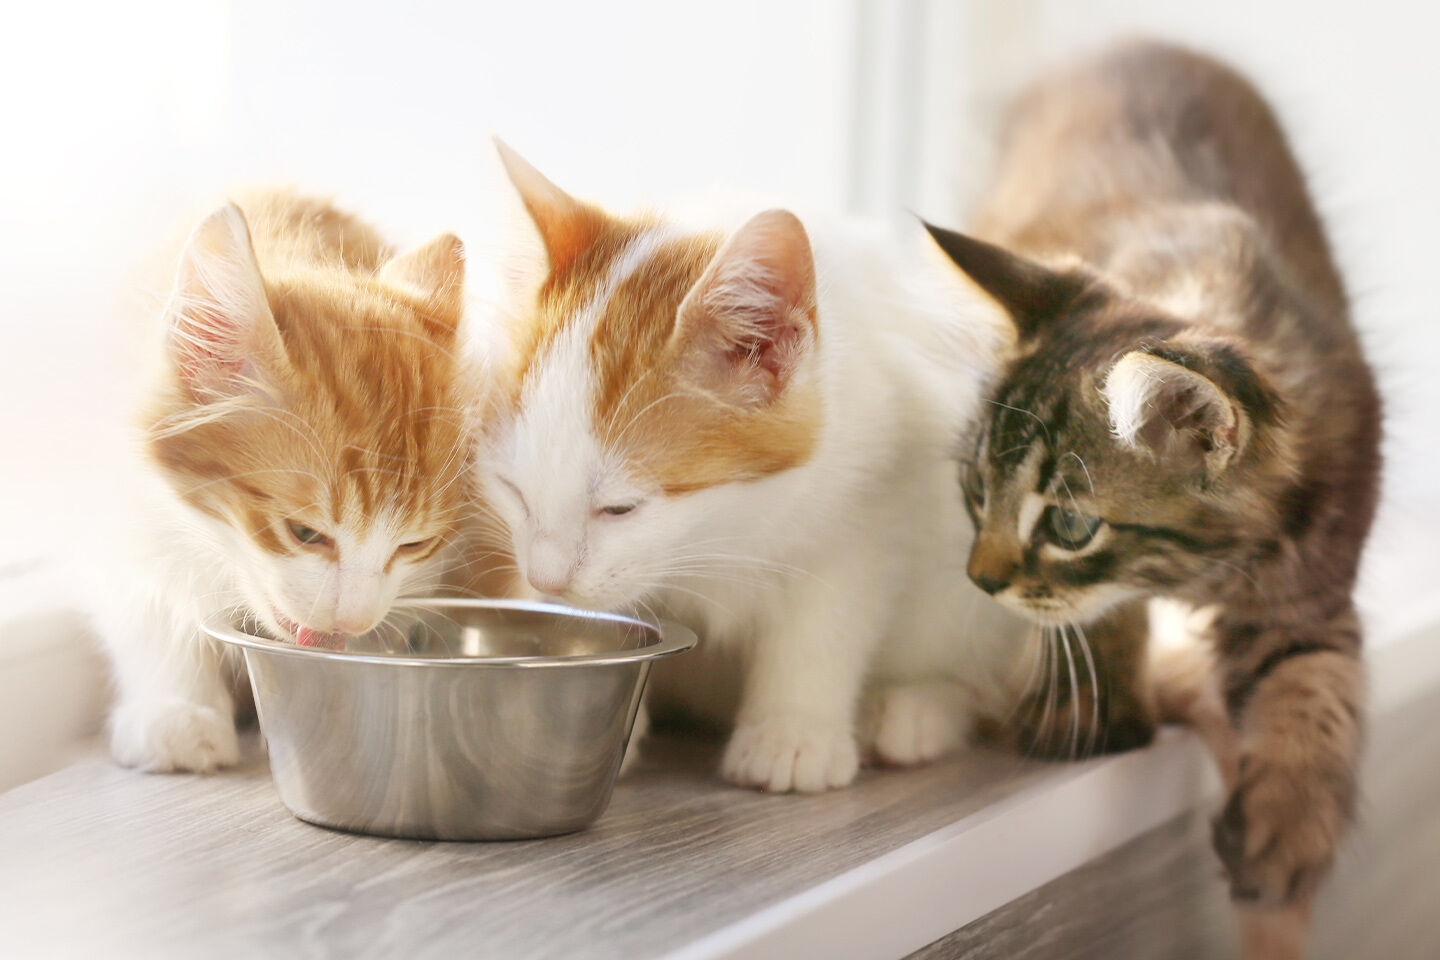 Zwei rot-weiße Katzen fressen aus einem Napf und eine graue Katze nähert sich vorsichtig von der Seite.